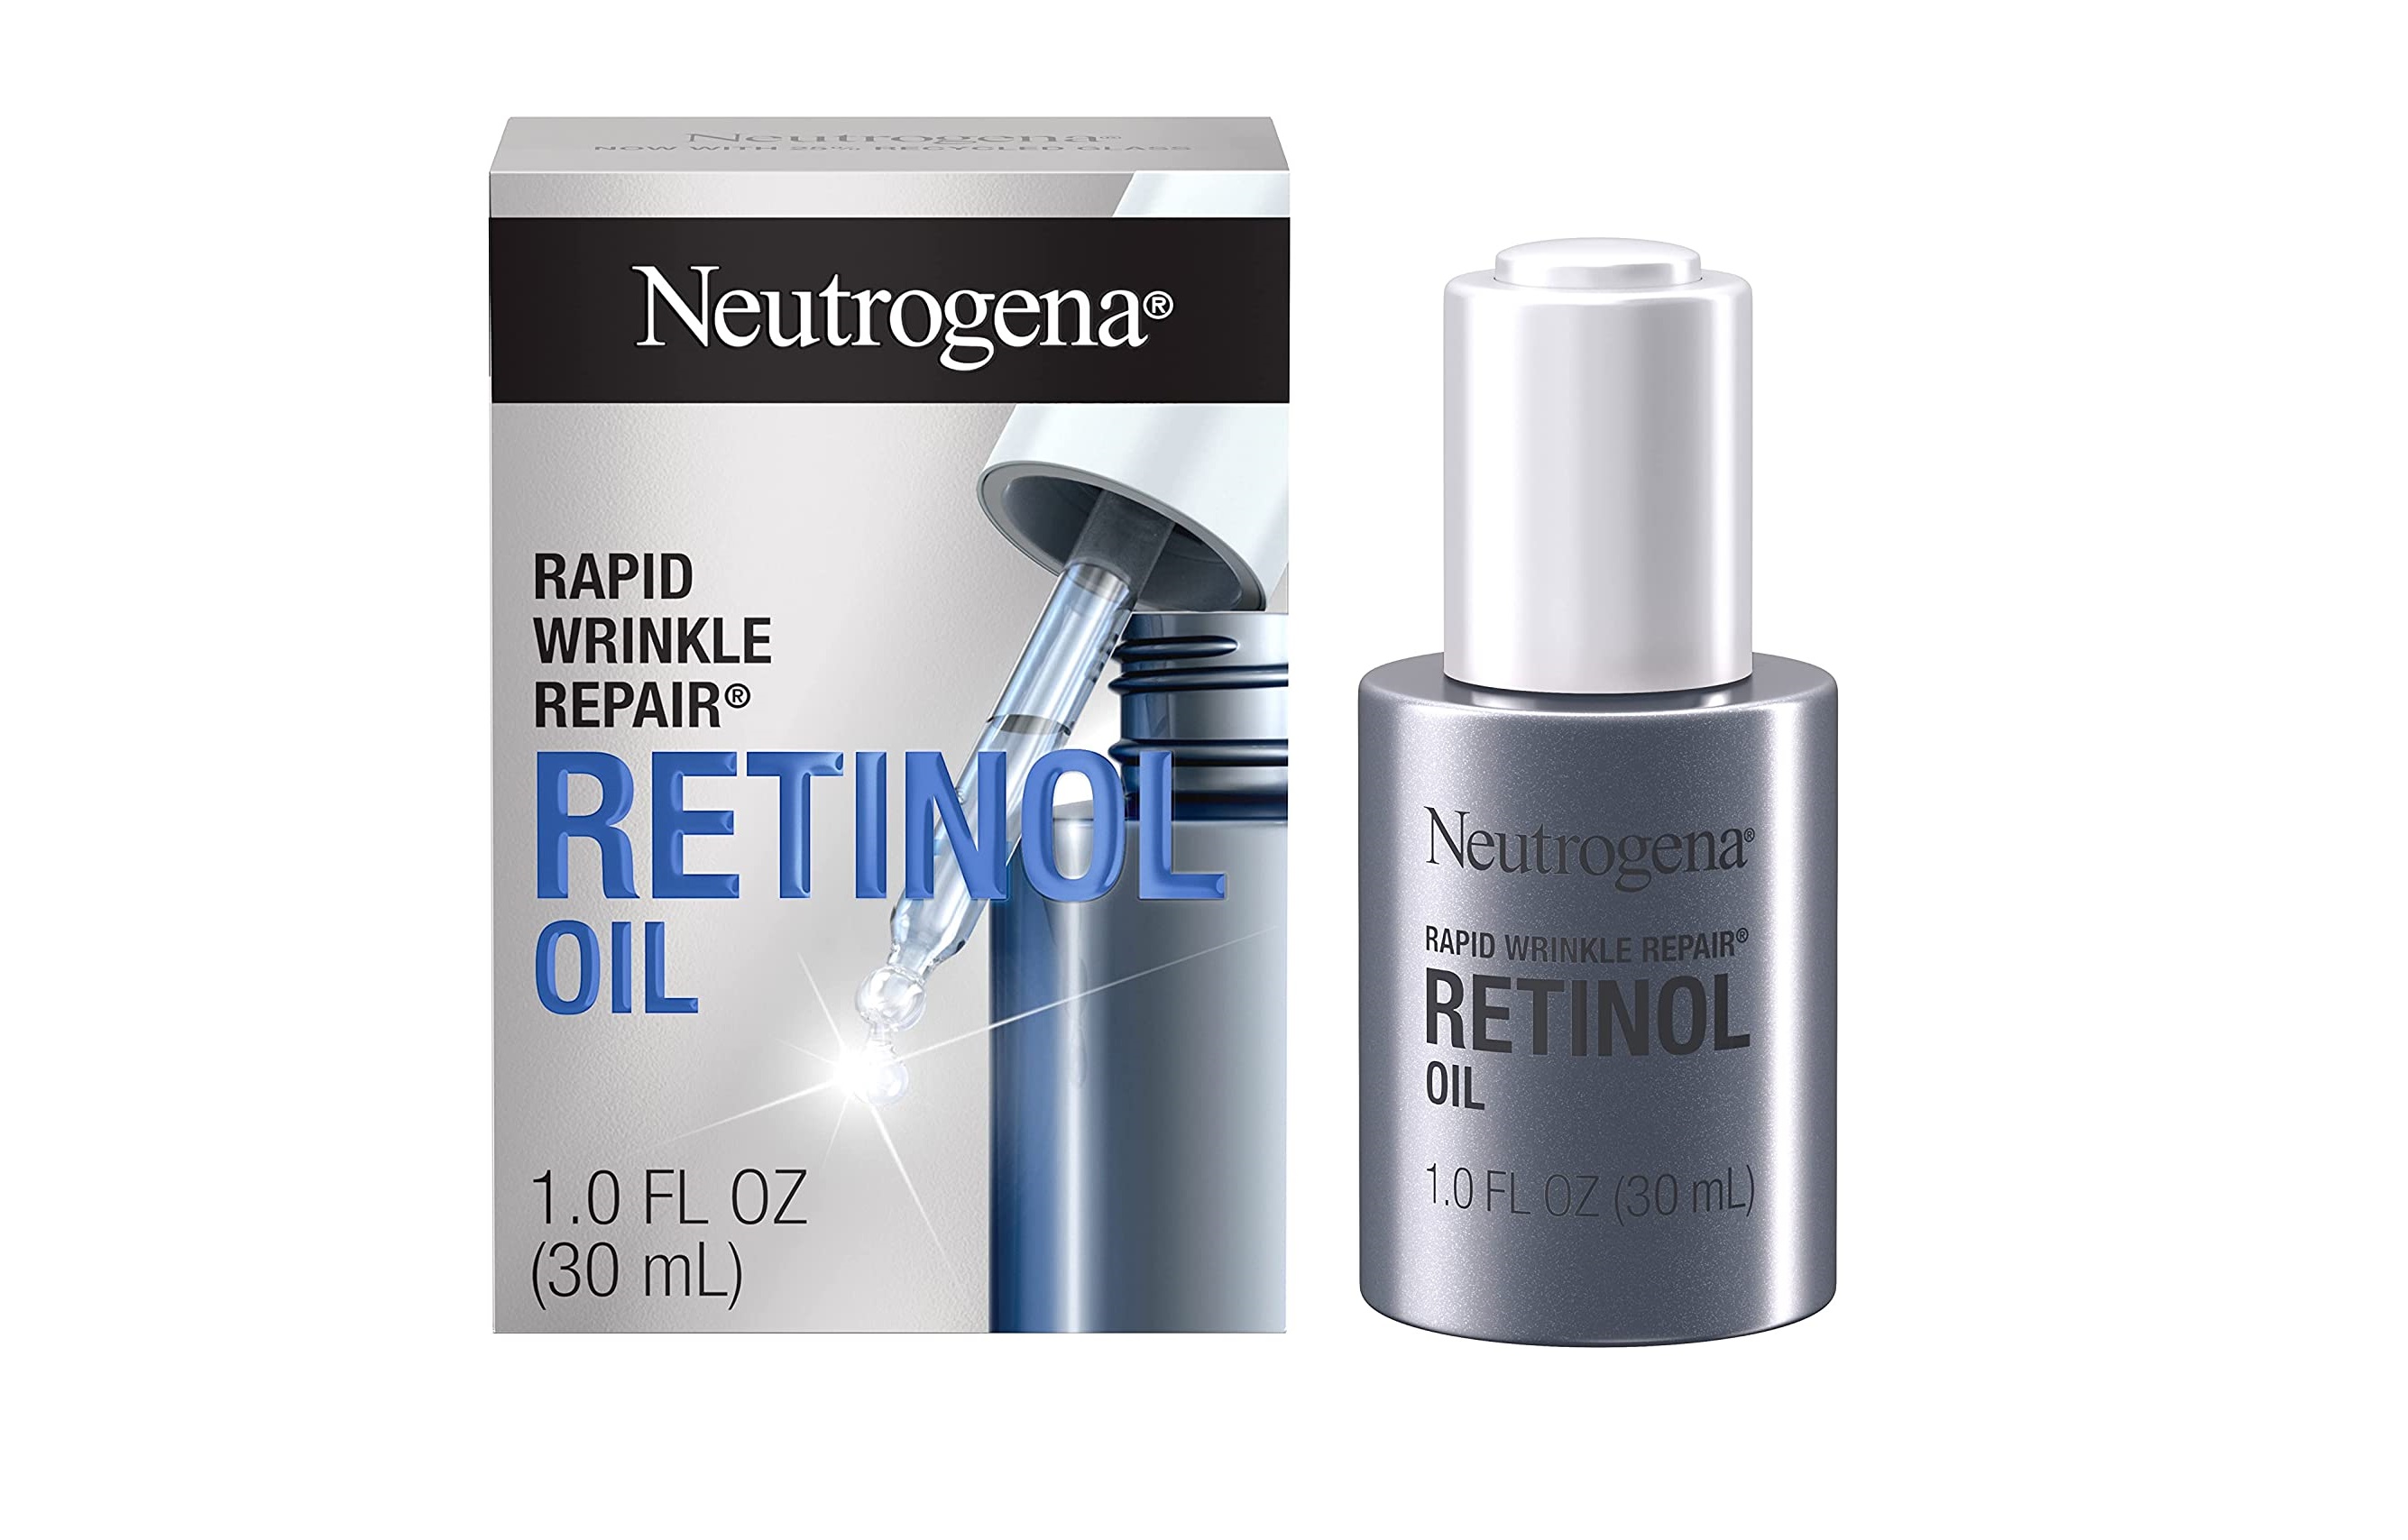 Neutrogena Rapid Wrinkle Repair oil serum.